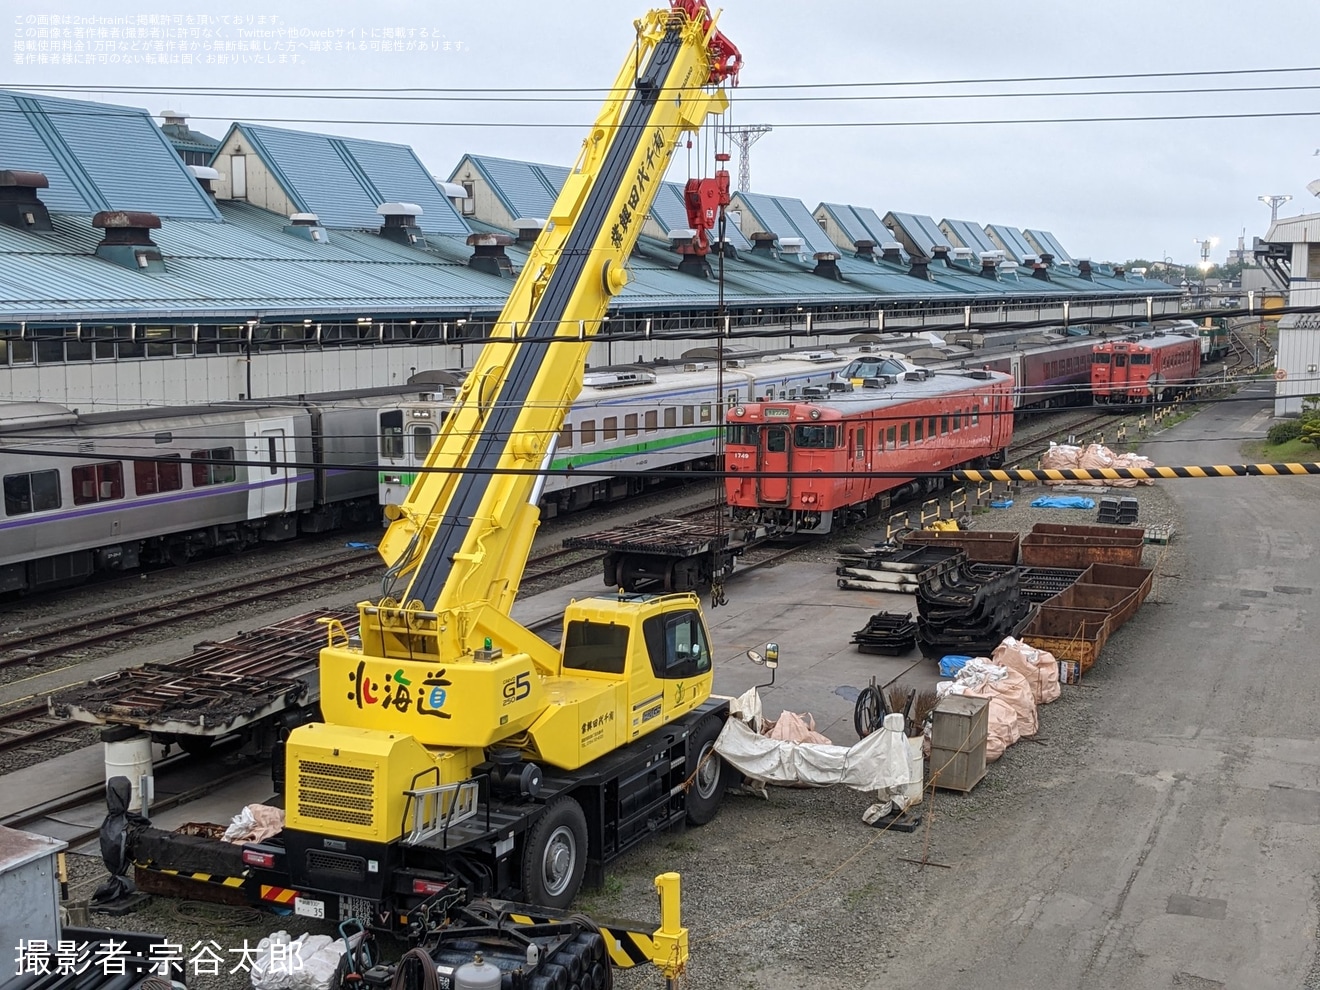 【JR北】キハ40-1727が釧路運輸車両所で解体終了への拡大写真